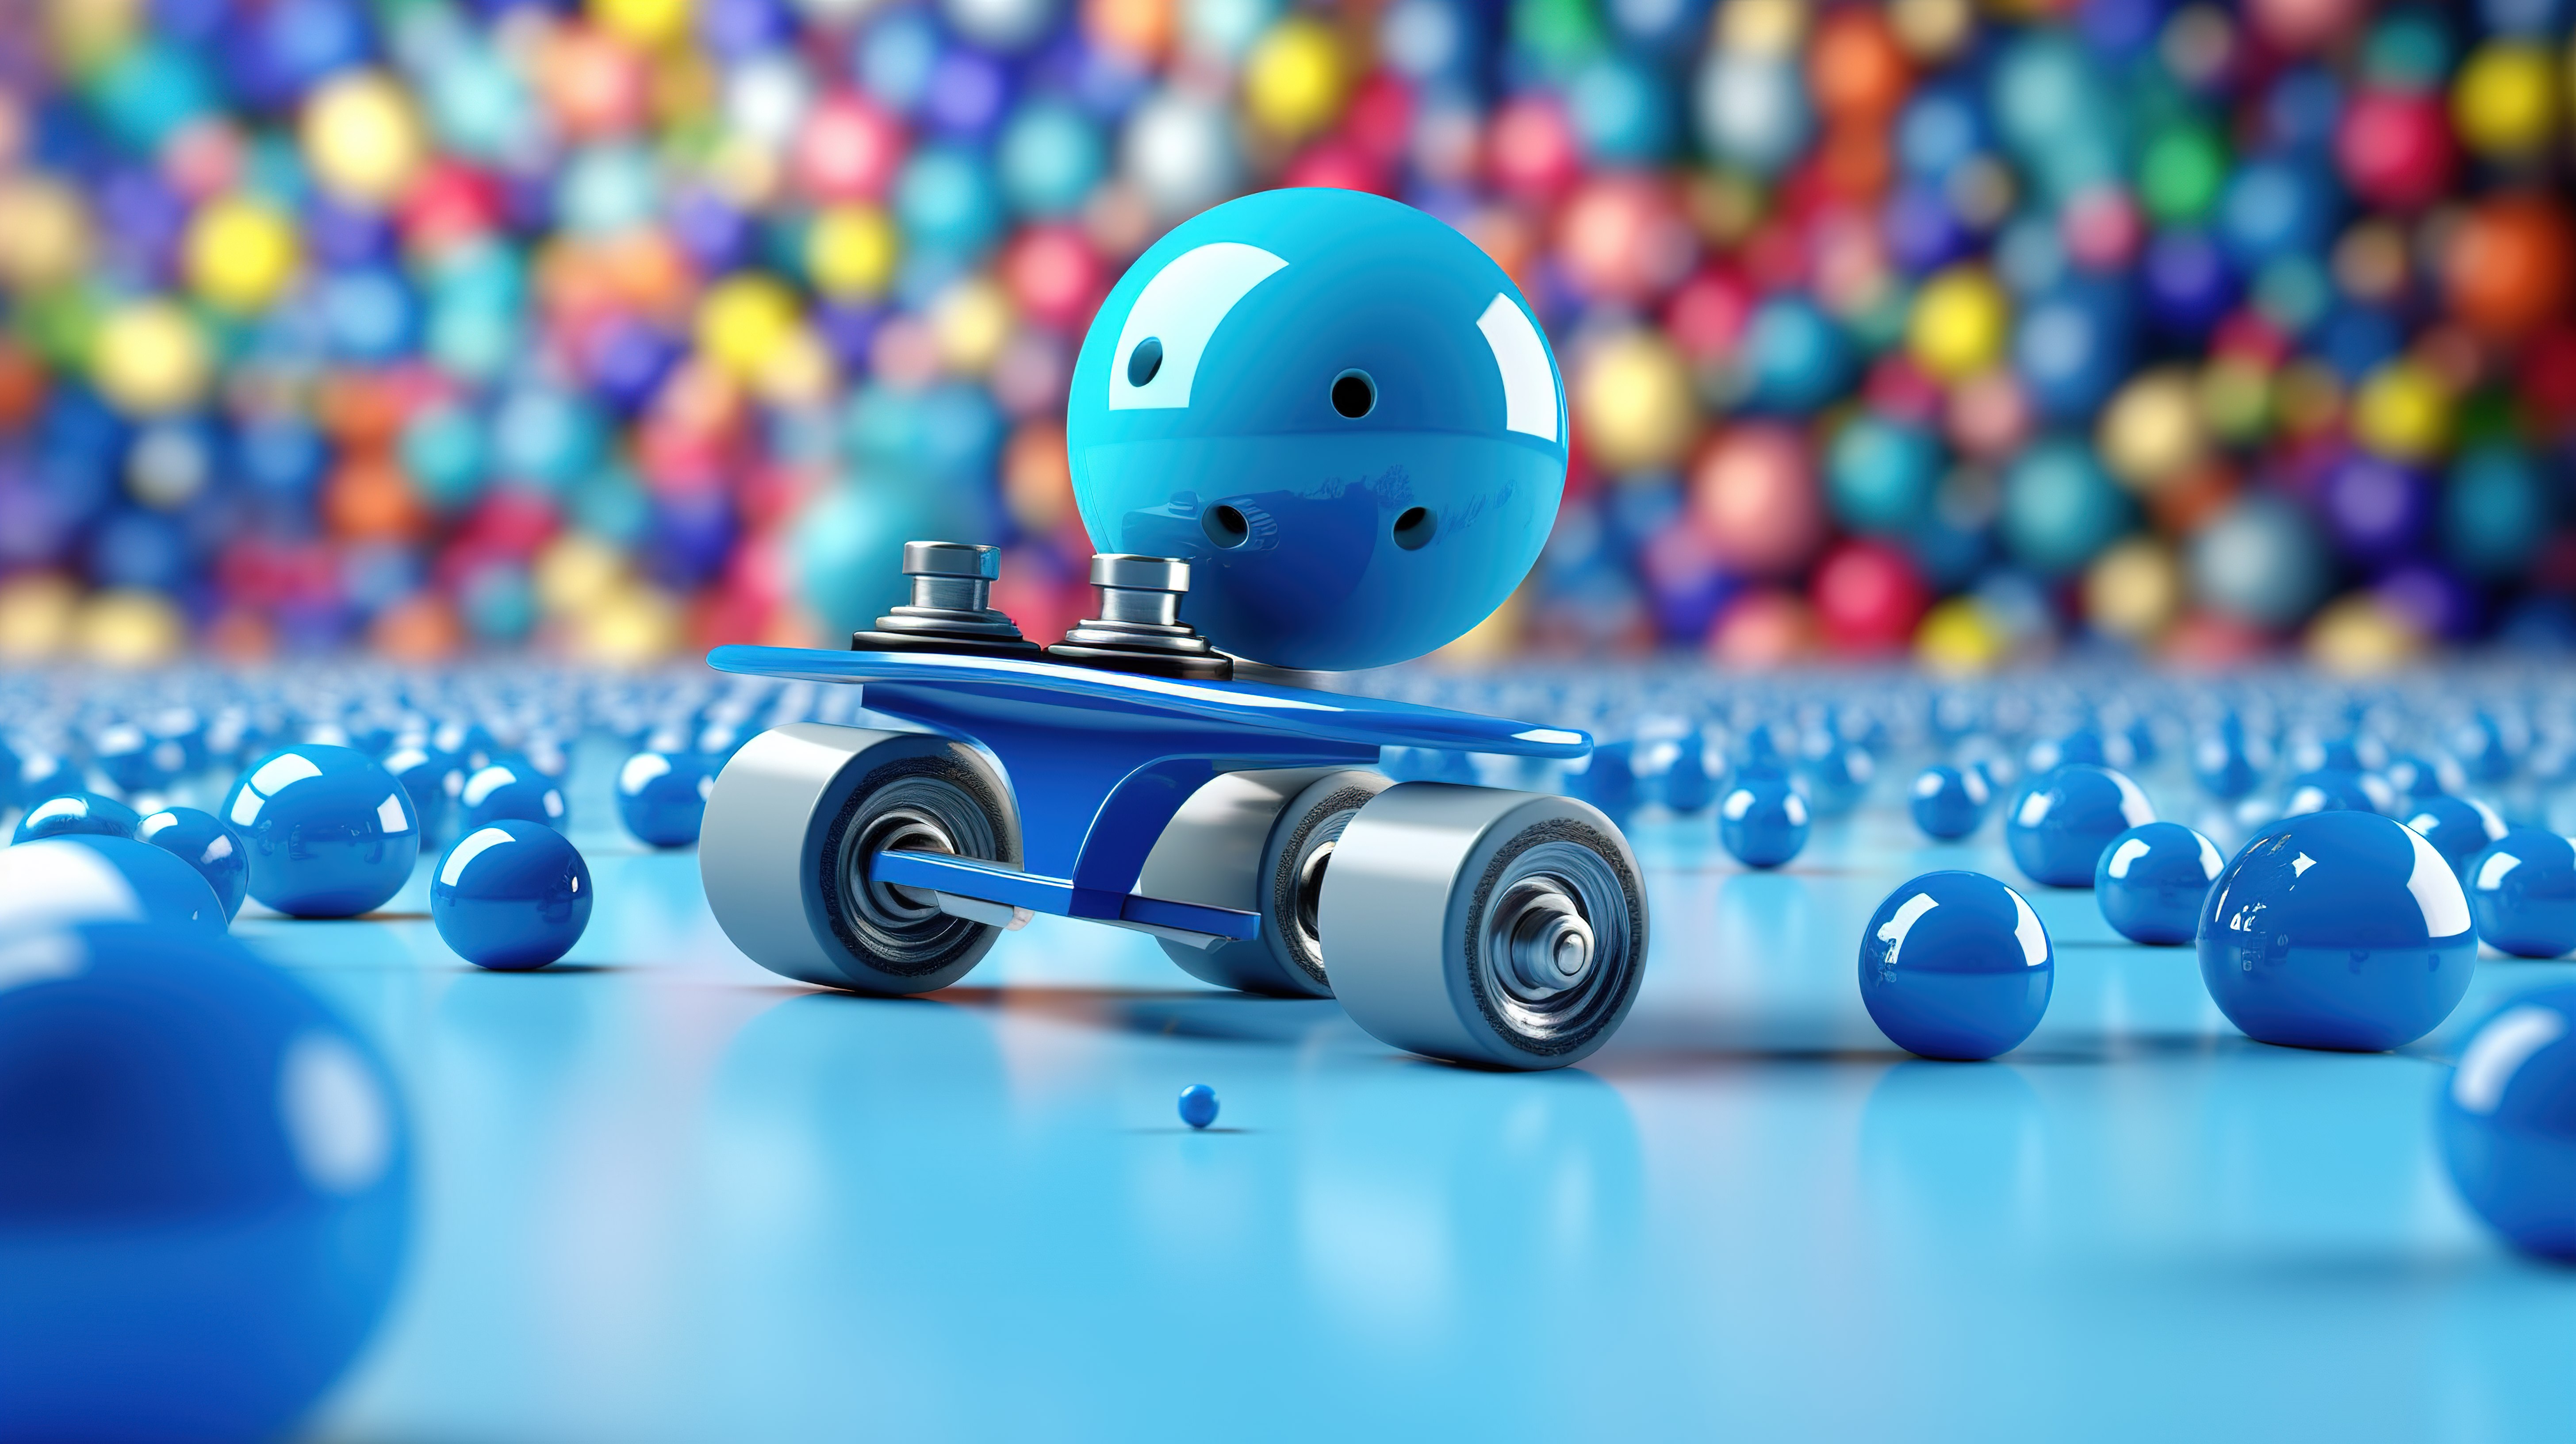 充满活力的蓝色溜冰鞋和滑板被彩色球的海洋包围，引人注目的 3D 渲染图片